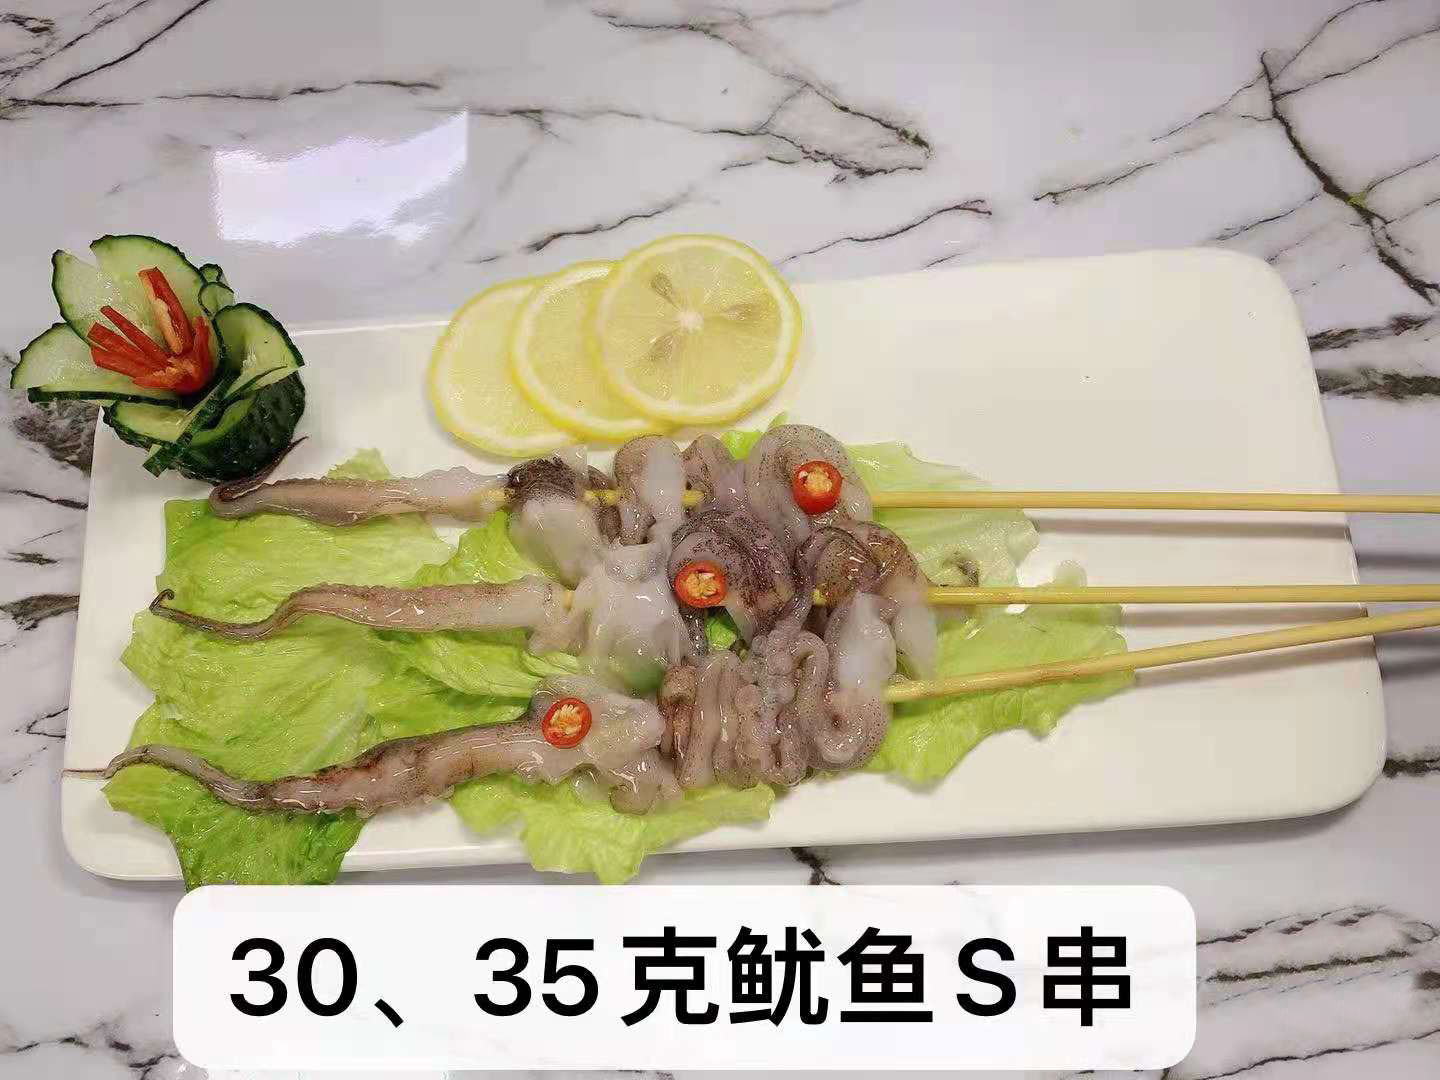  30、35克魷魚S串